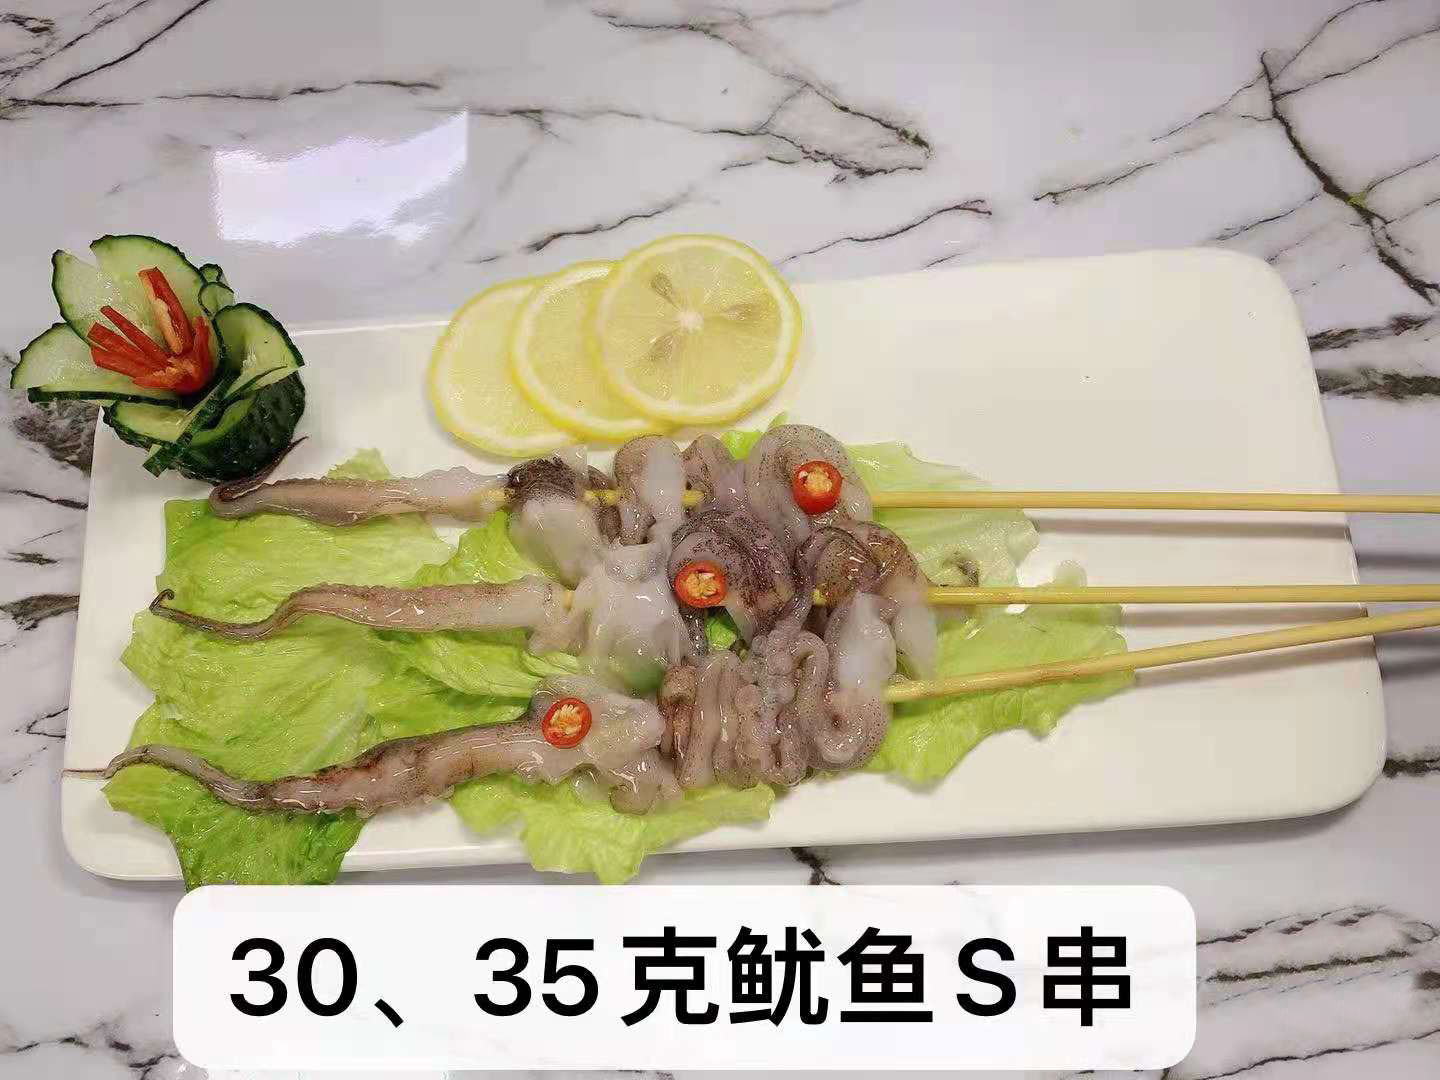  30、35克魷魚S串